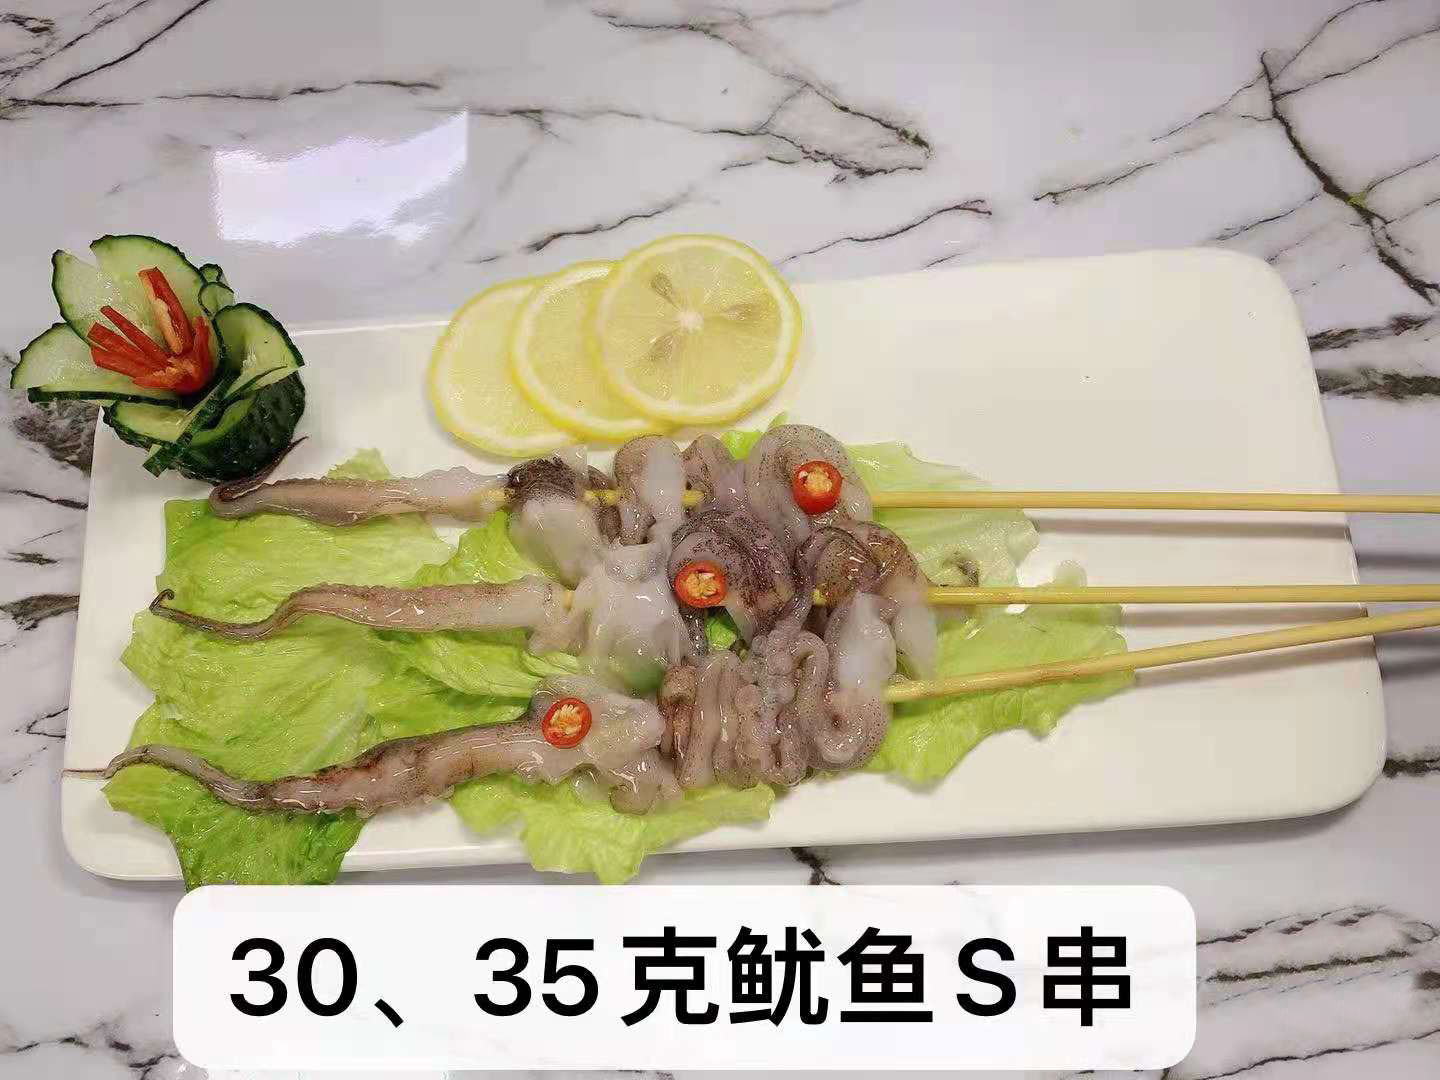  30、35克魷魚S串